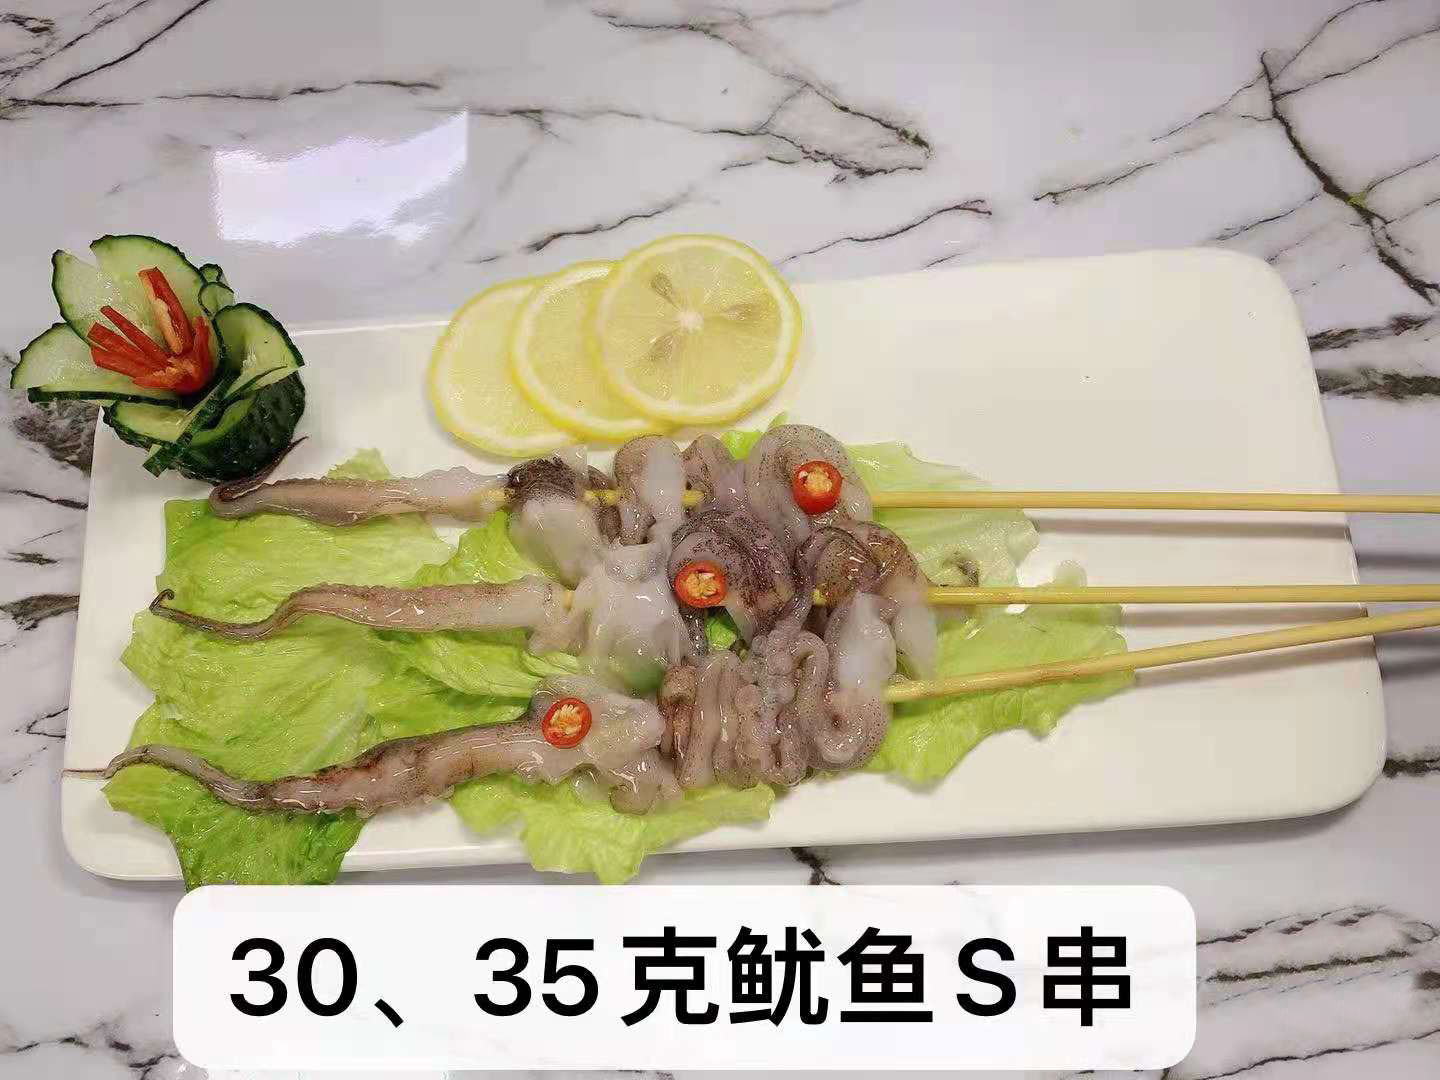  30、35克魷魚S串